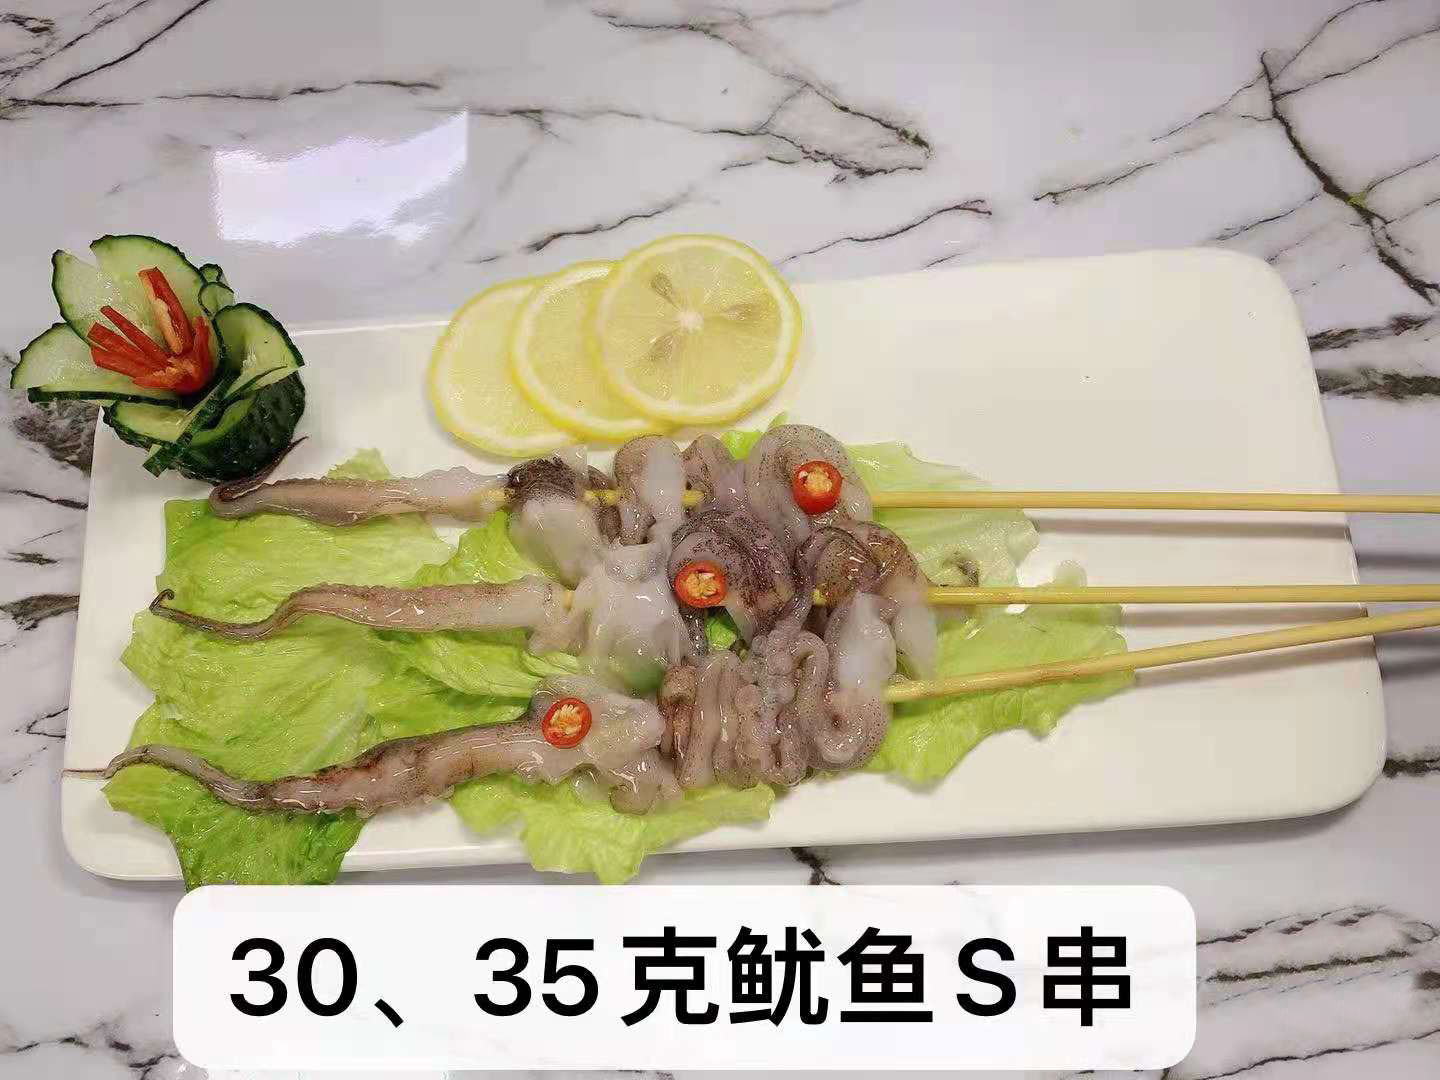  30、35克魷魚S串